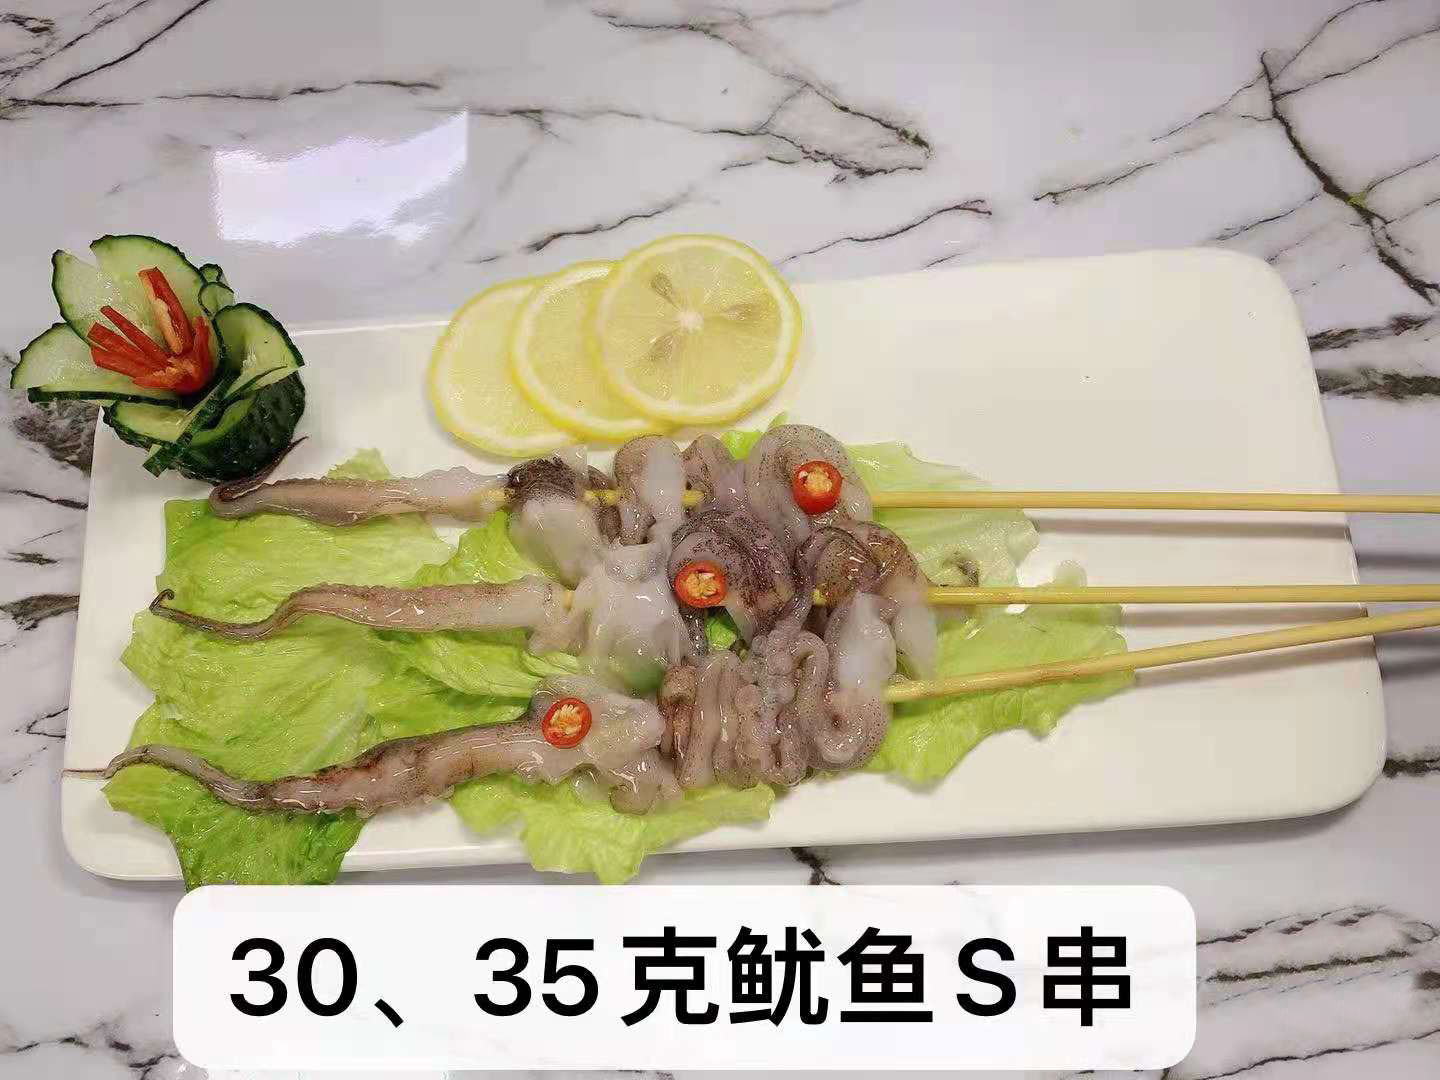  30、35克魷魚S串